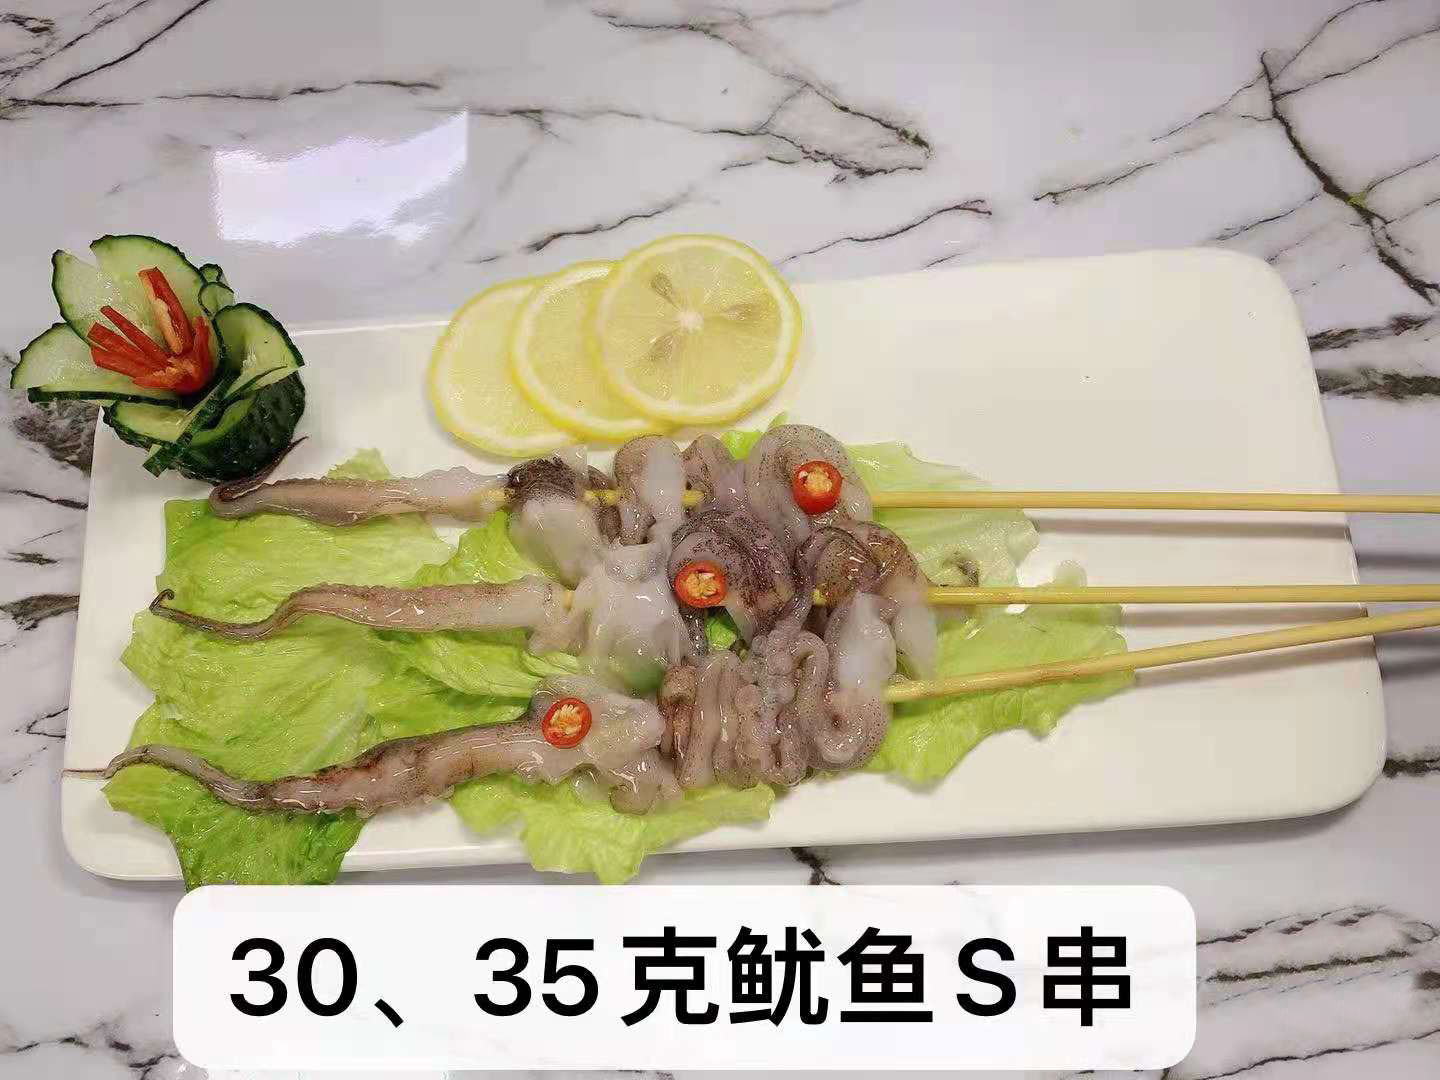  30、35克魷魚S串